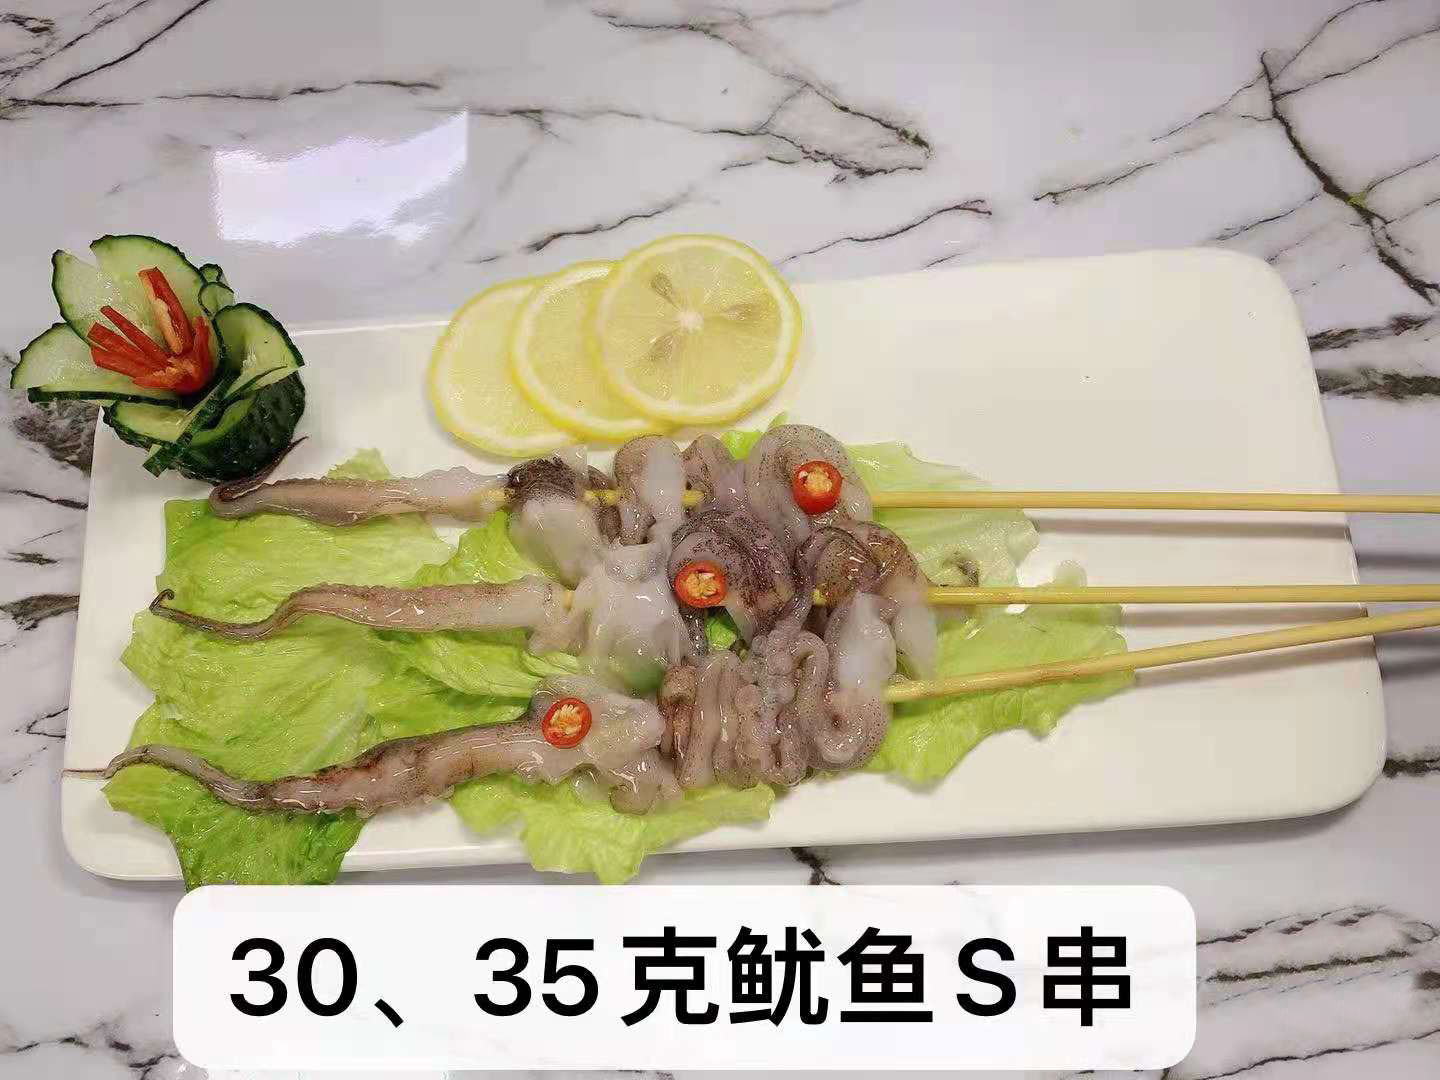  30、35克魷魚S串